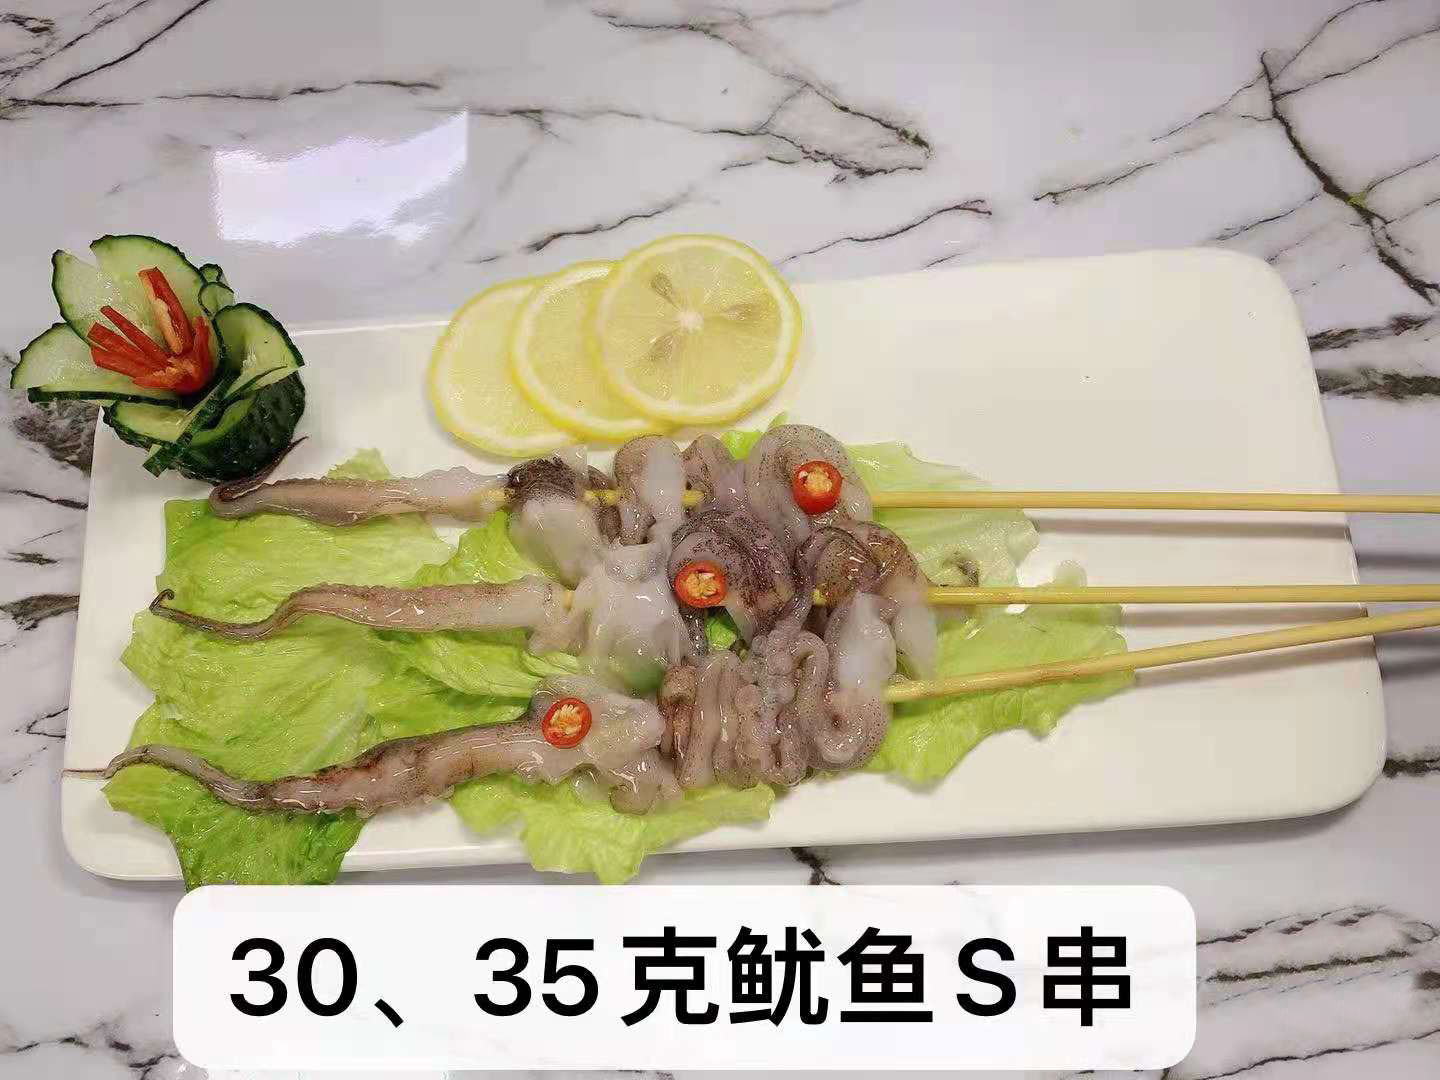  30、35克魷魚S串